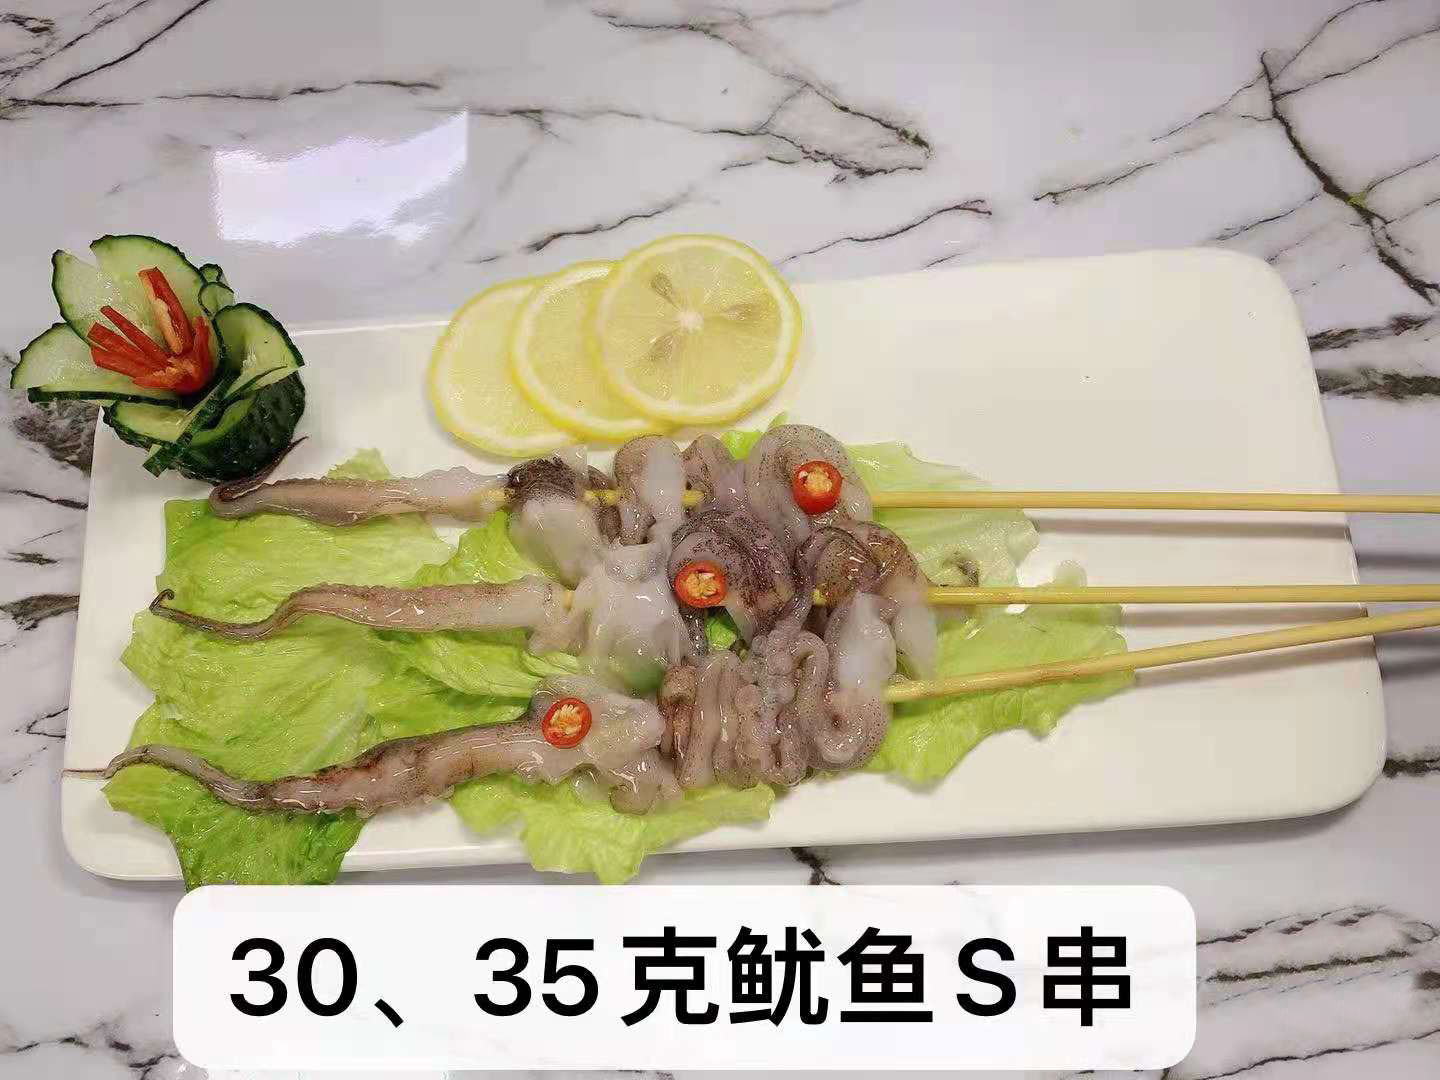  30、35克魷魚S串